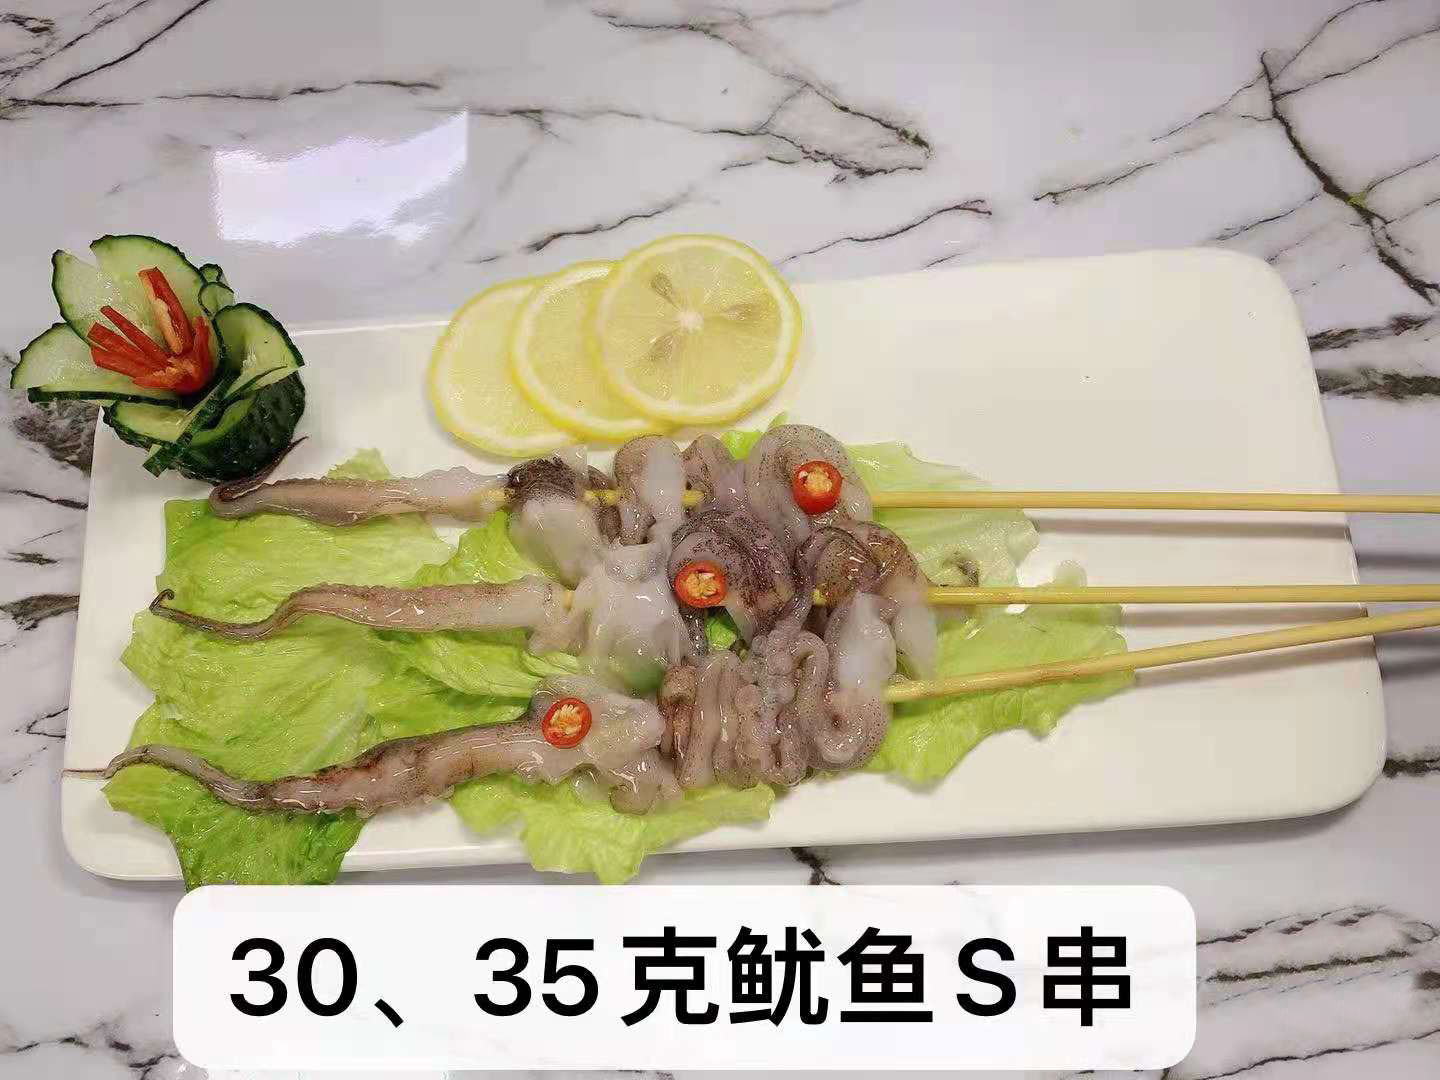  30、35克魷魚S串